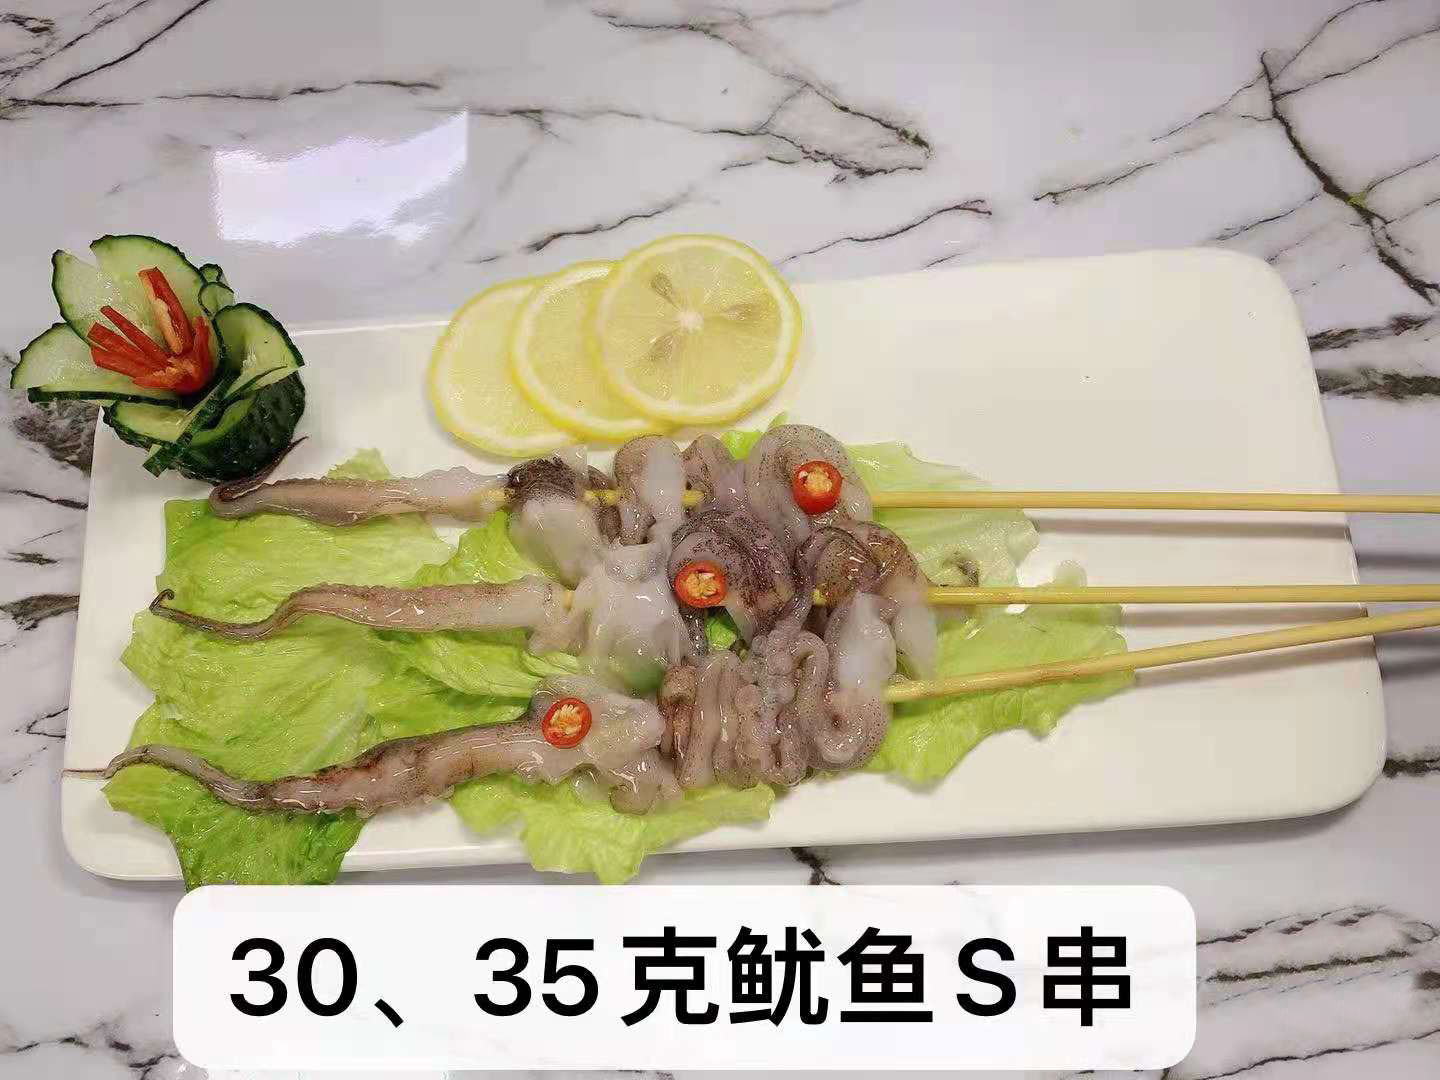  30、35克魷魚S串